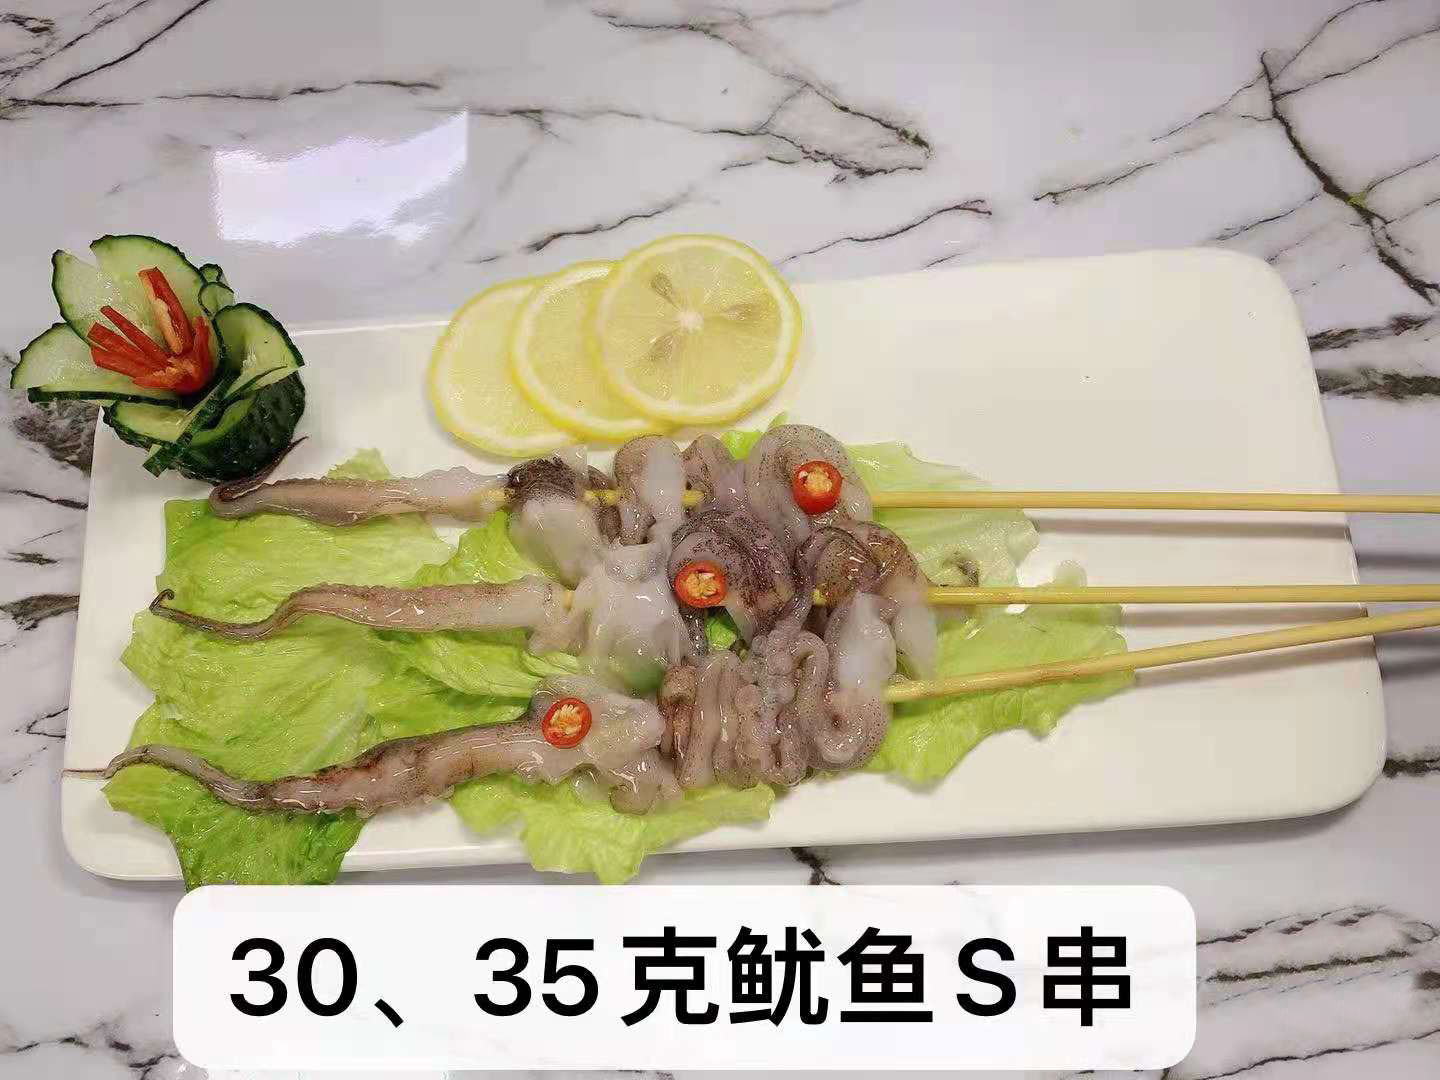  30、35克魷魚S串